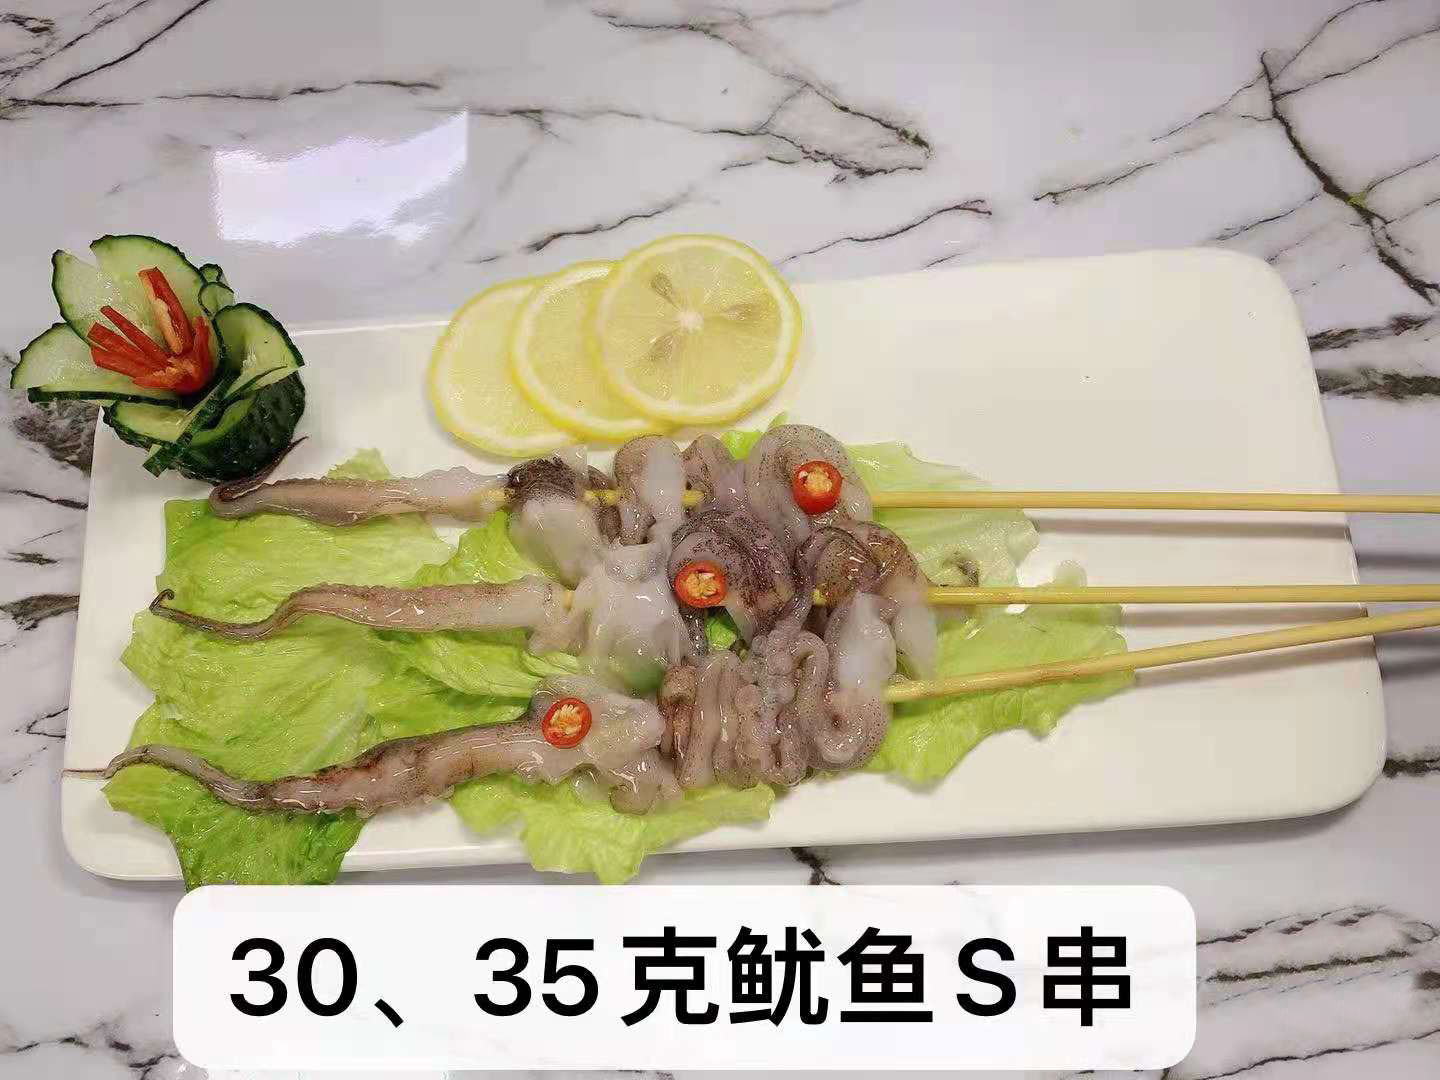  30、35克魷魚S串